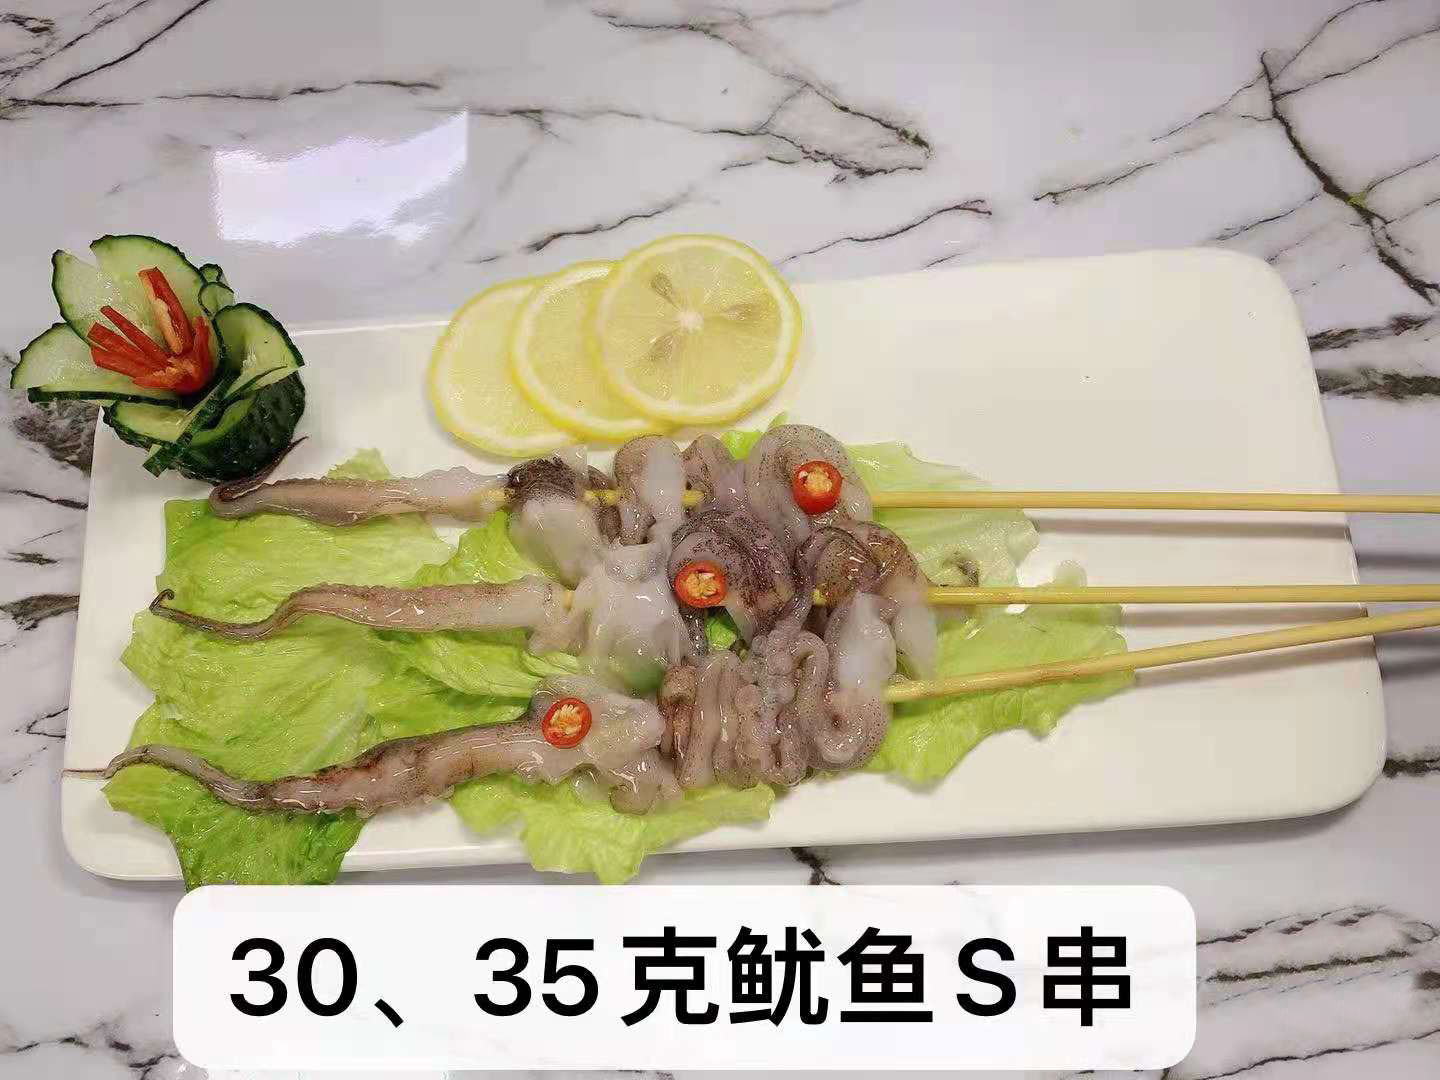  30、35克魷魚S串